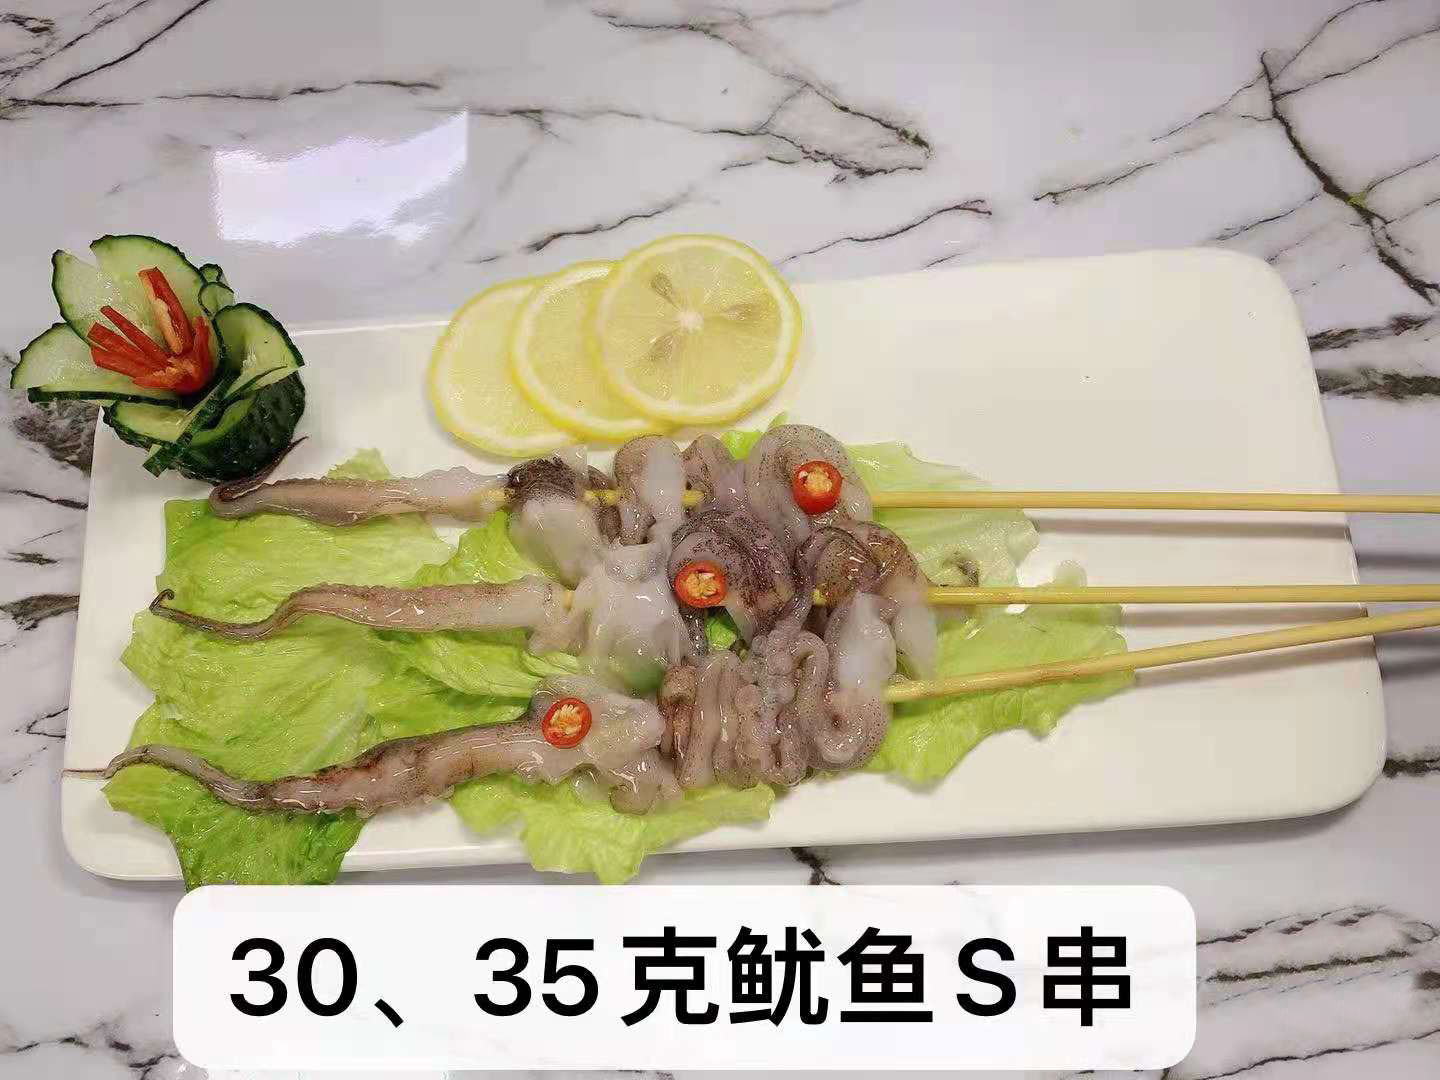  30、35克魷魚S串